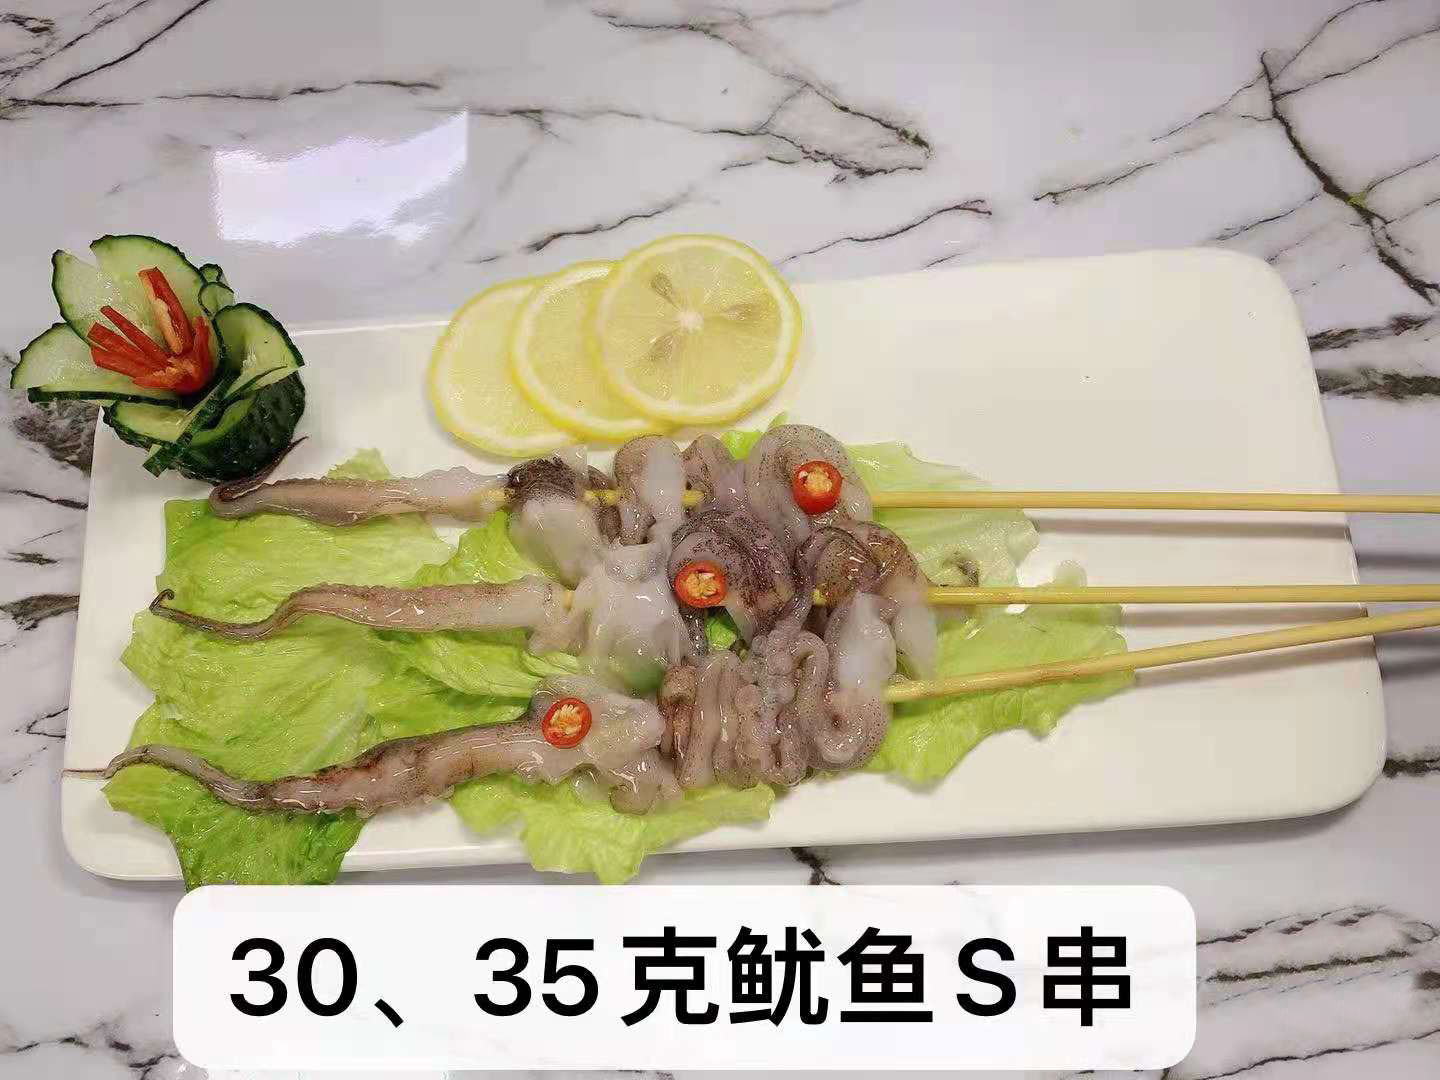  30、35克魷魚S串